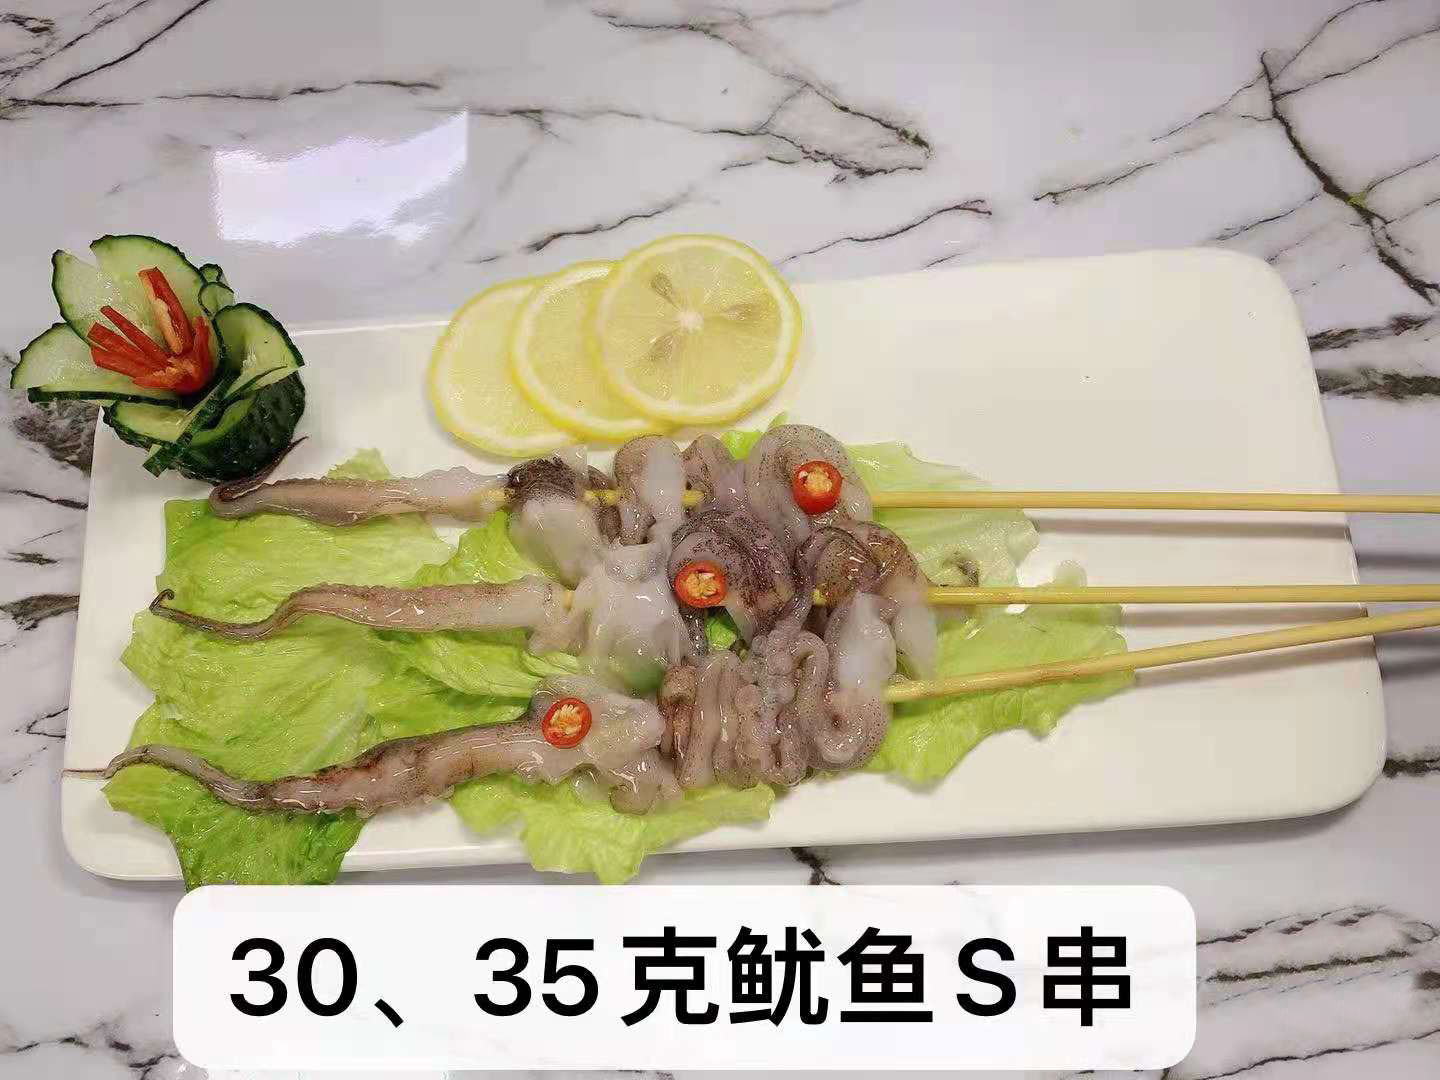  30、35克魷魚S串